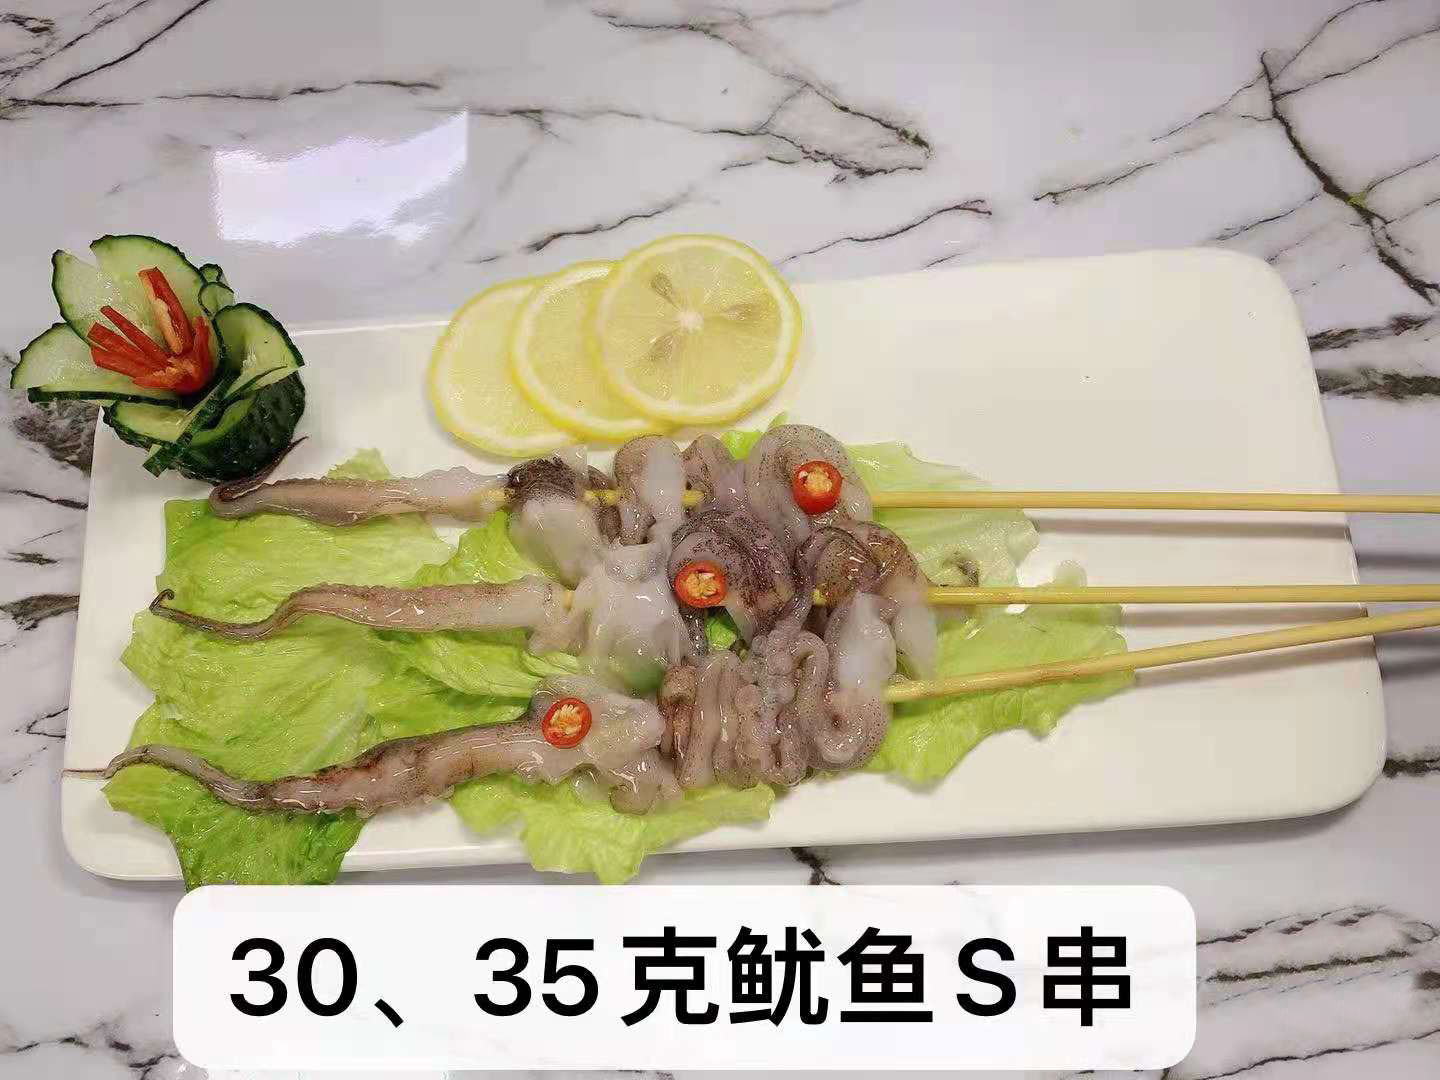  30、35克魷魚S串